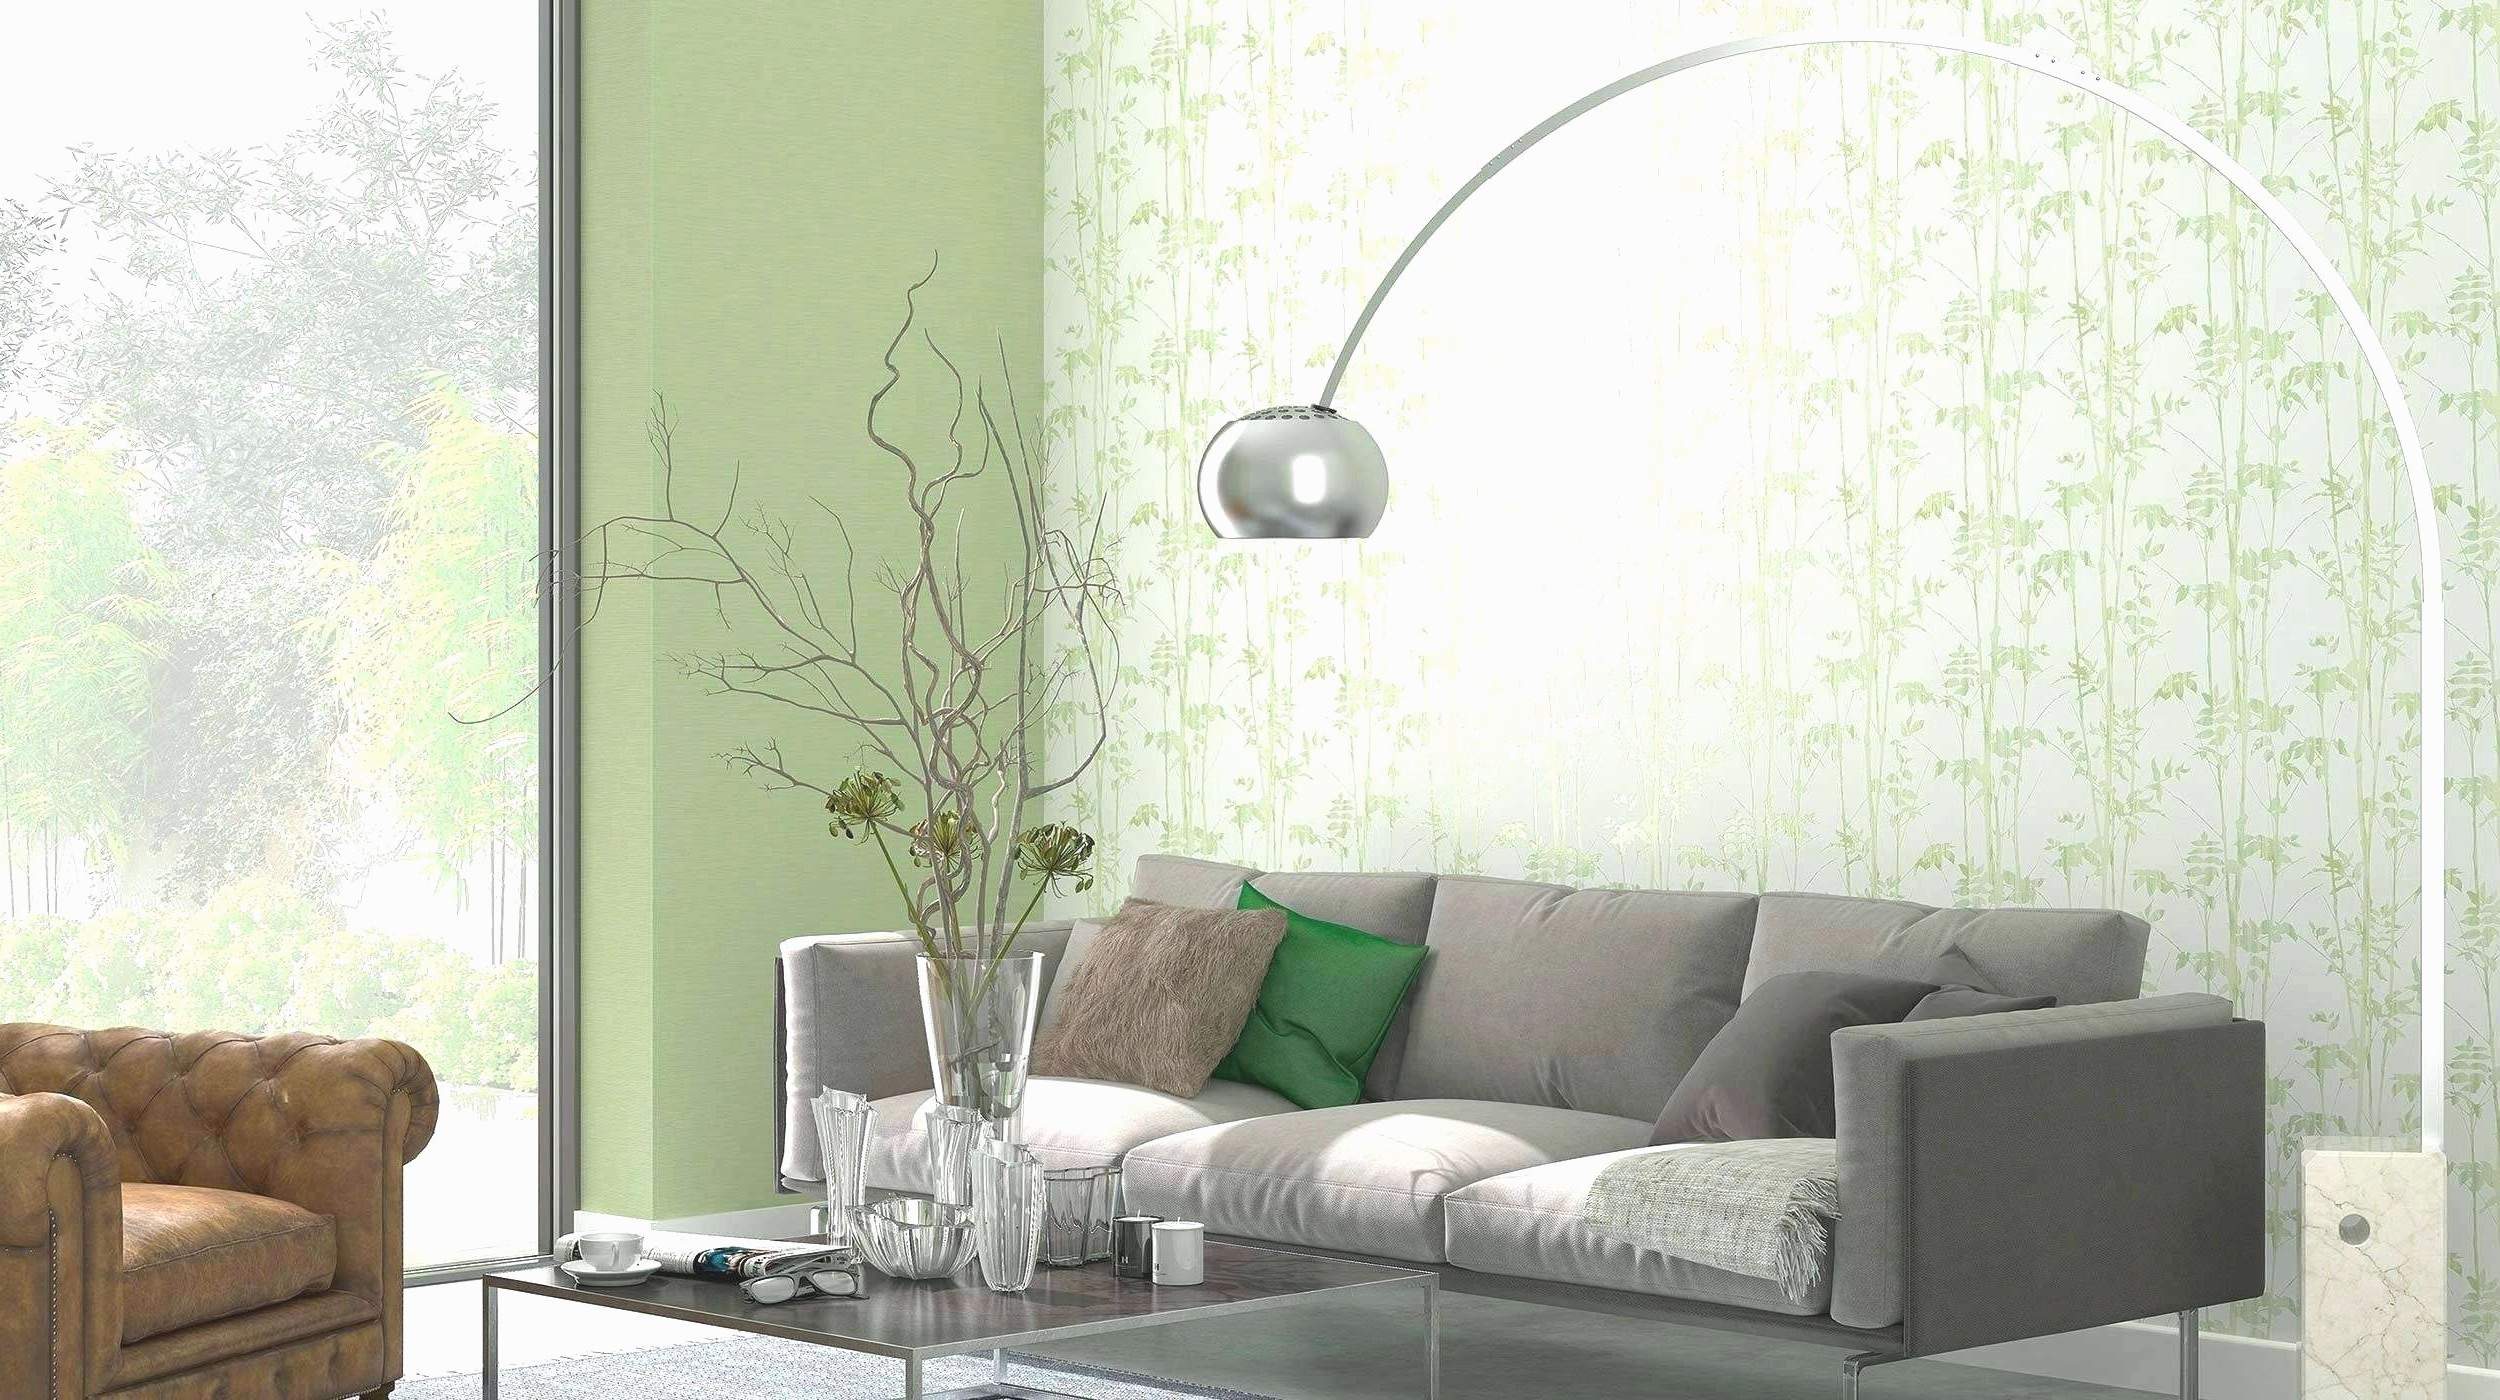 Deko Aus Metall Genial 25 Luxus Wanddeko Wohnzimmer Metall Das Beste Von